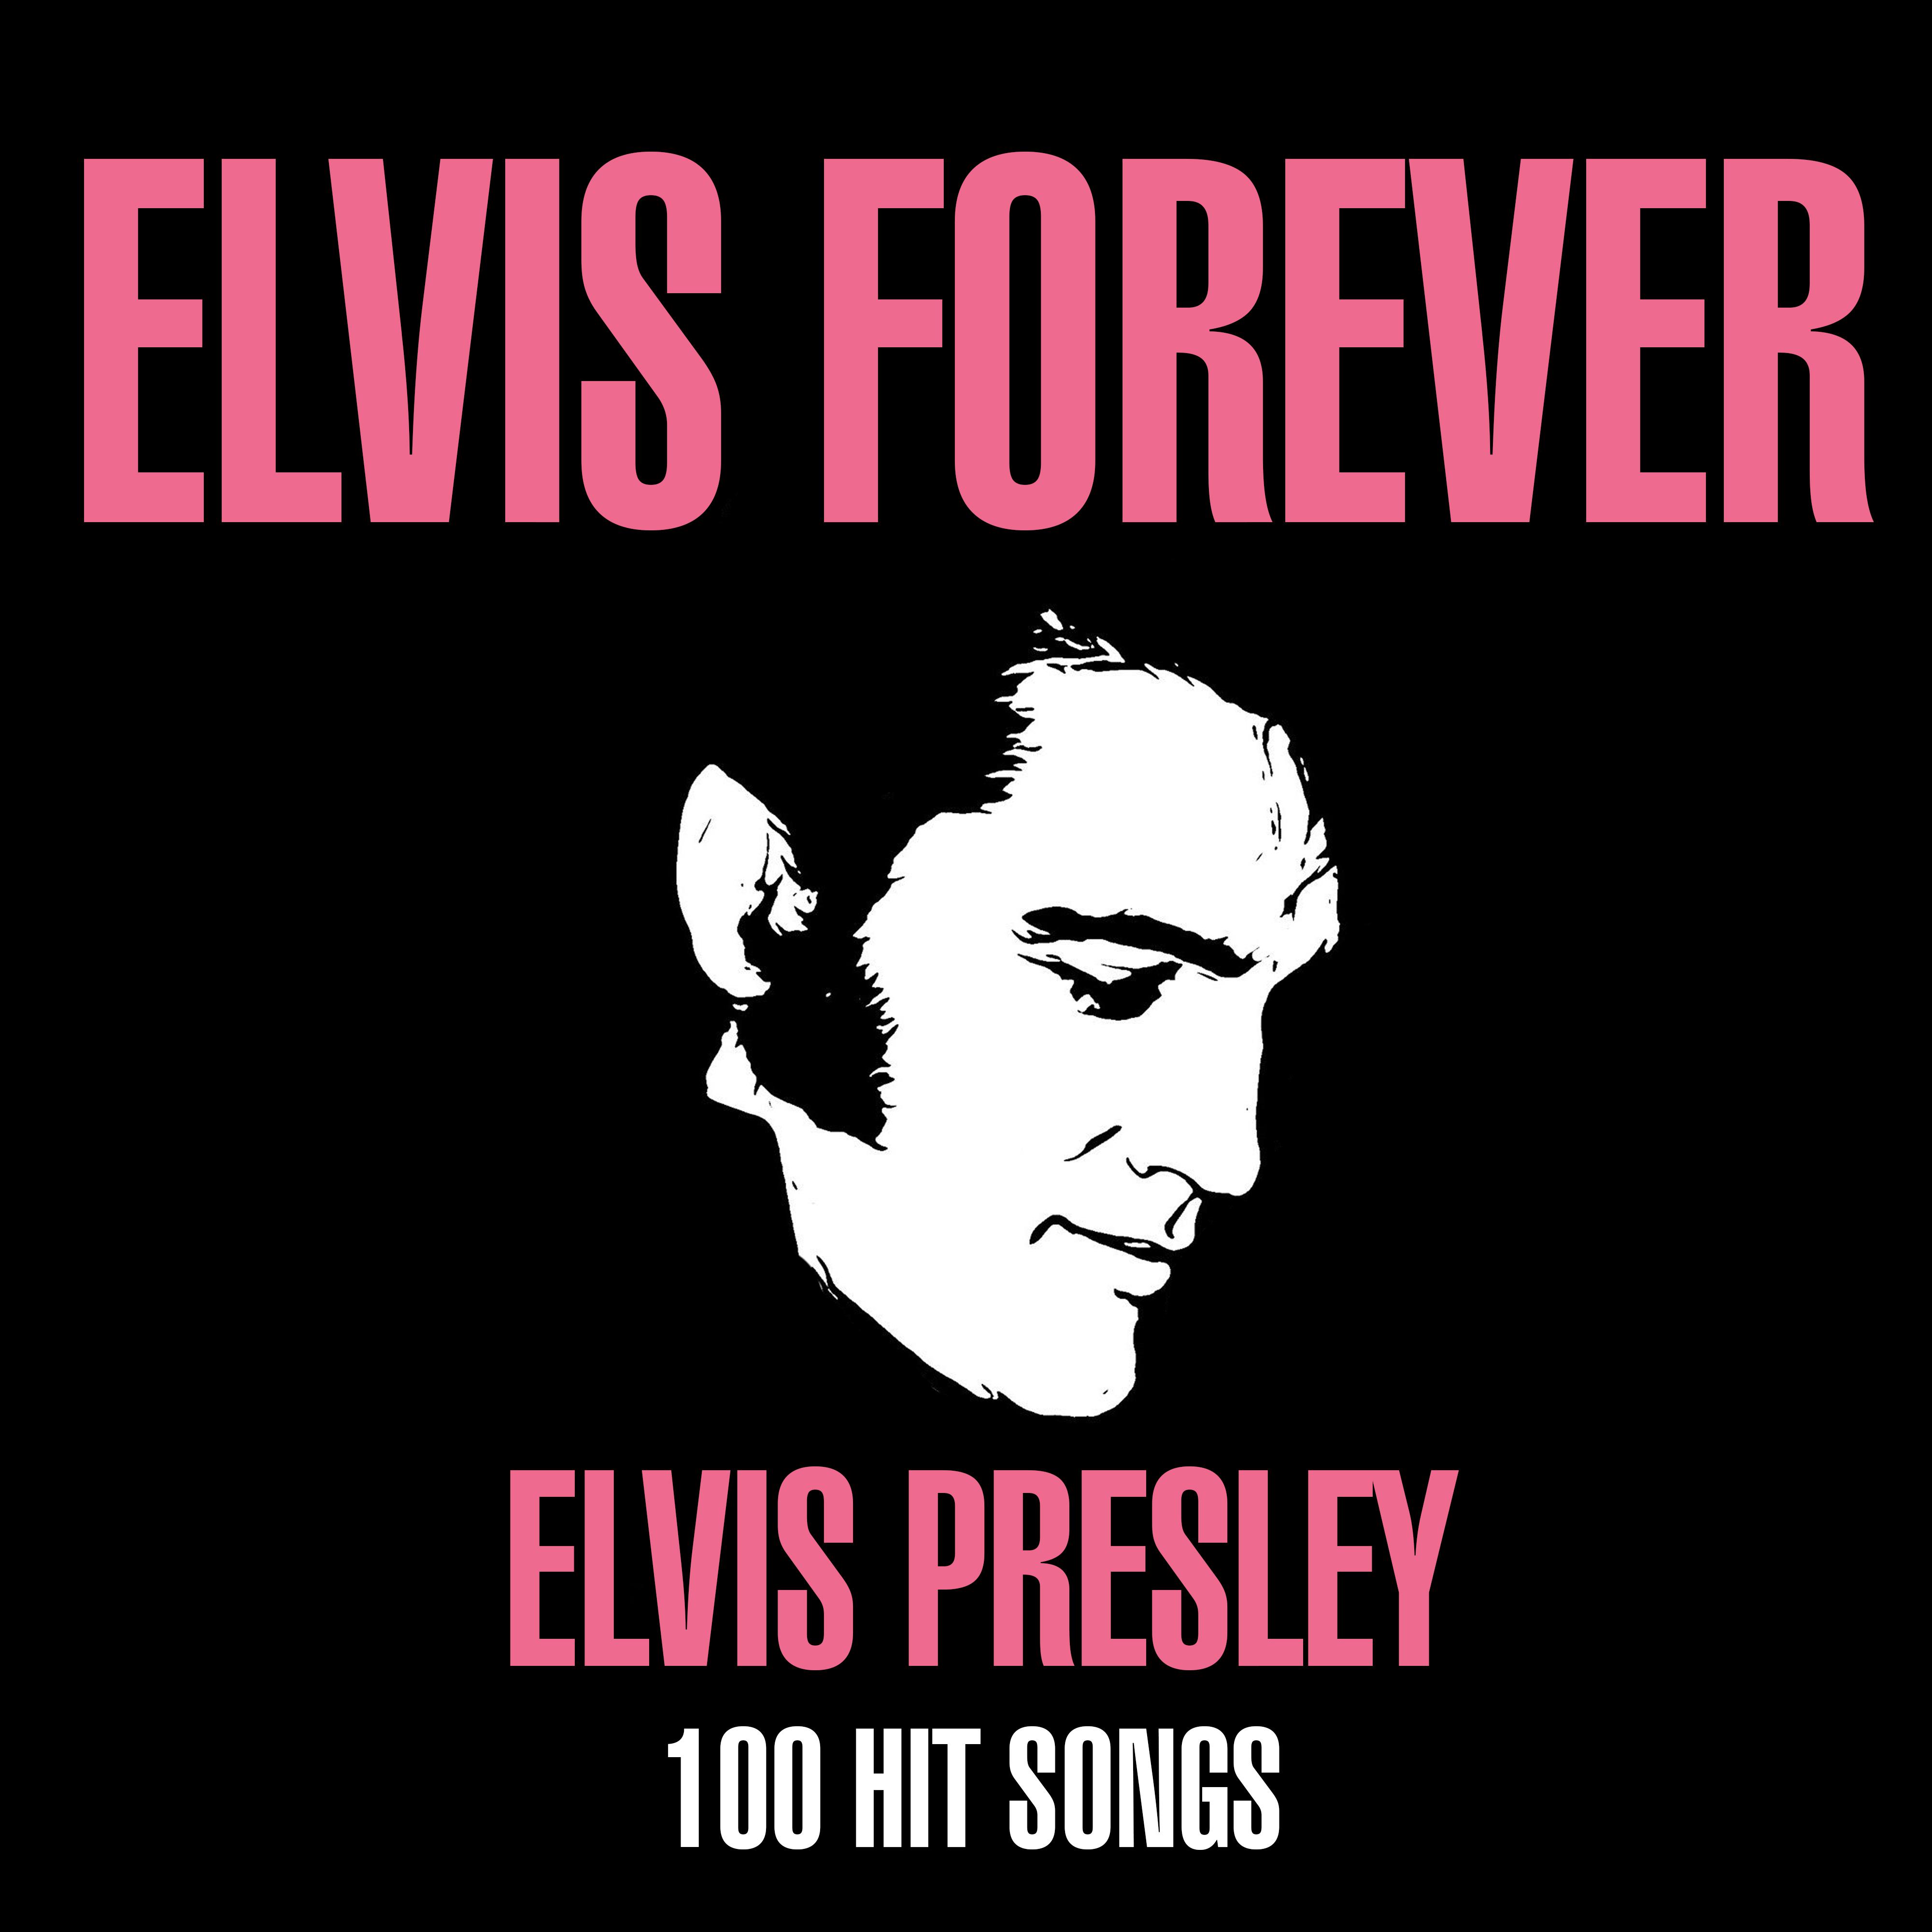 Elvis Forever - 100 Hit Songs